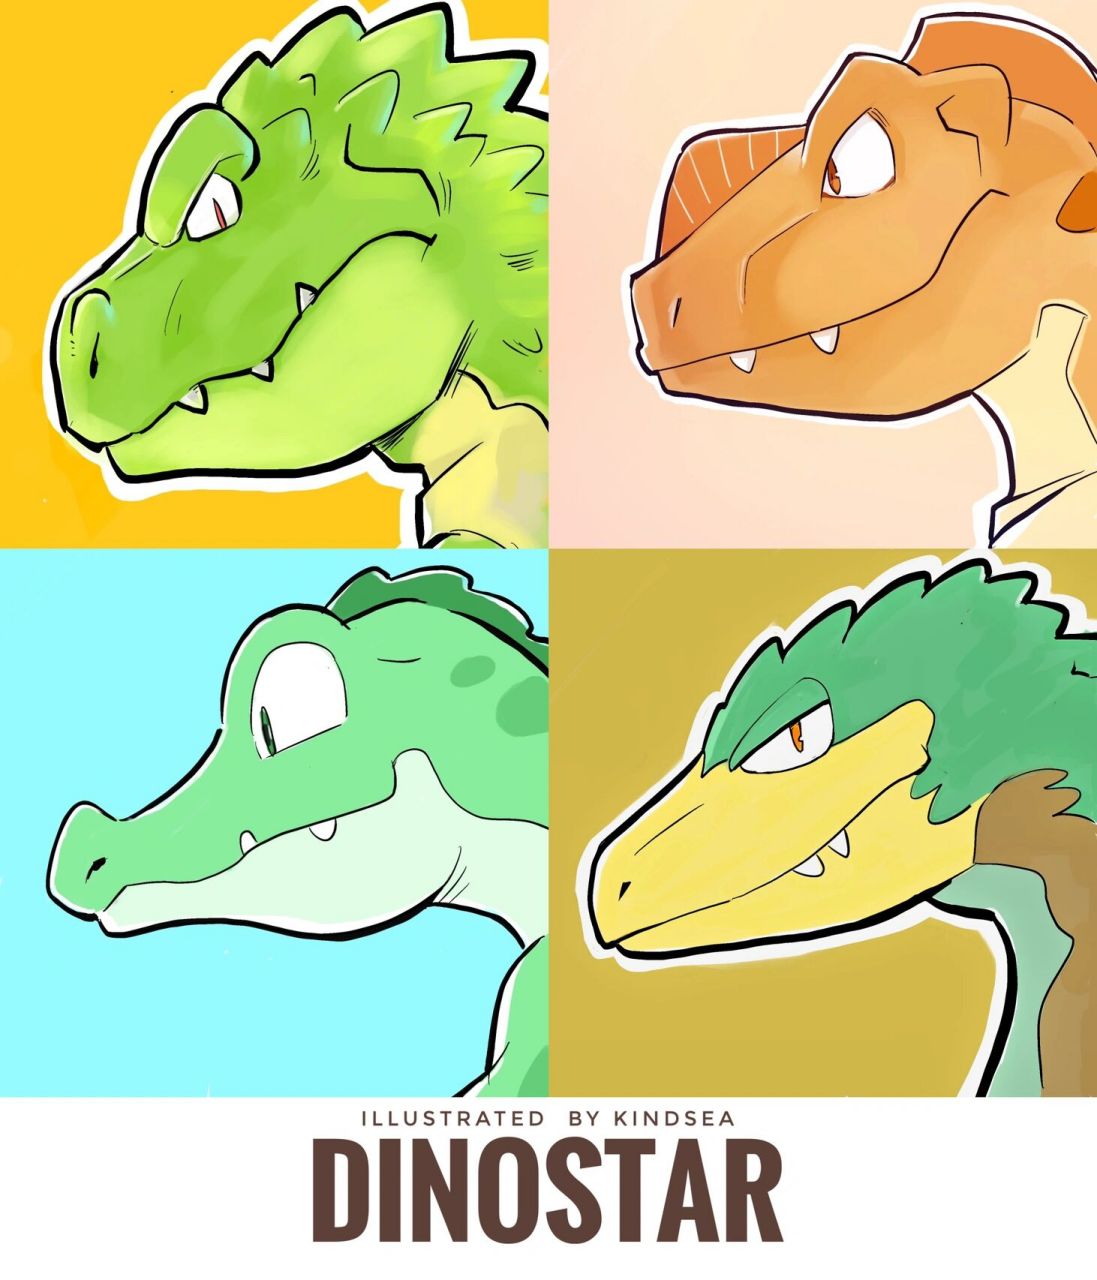 dinostar 恐龙q版头像第一弹 这次的四位恐龙小伙伴大家还记得吗?